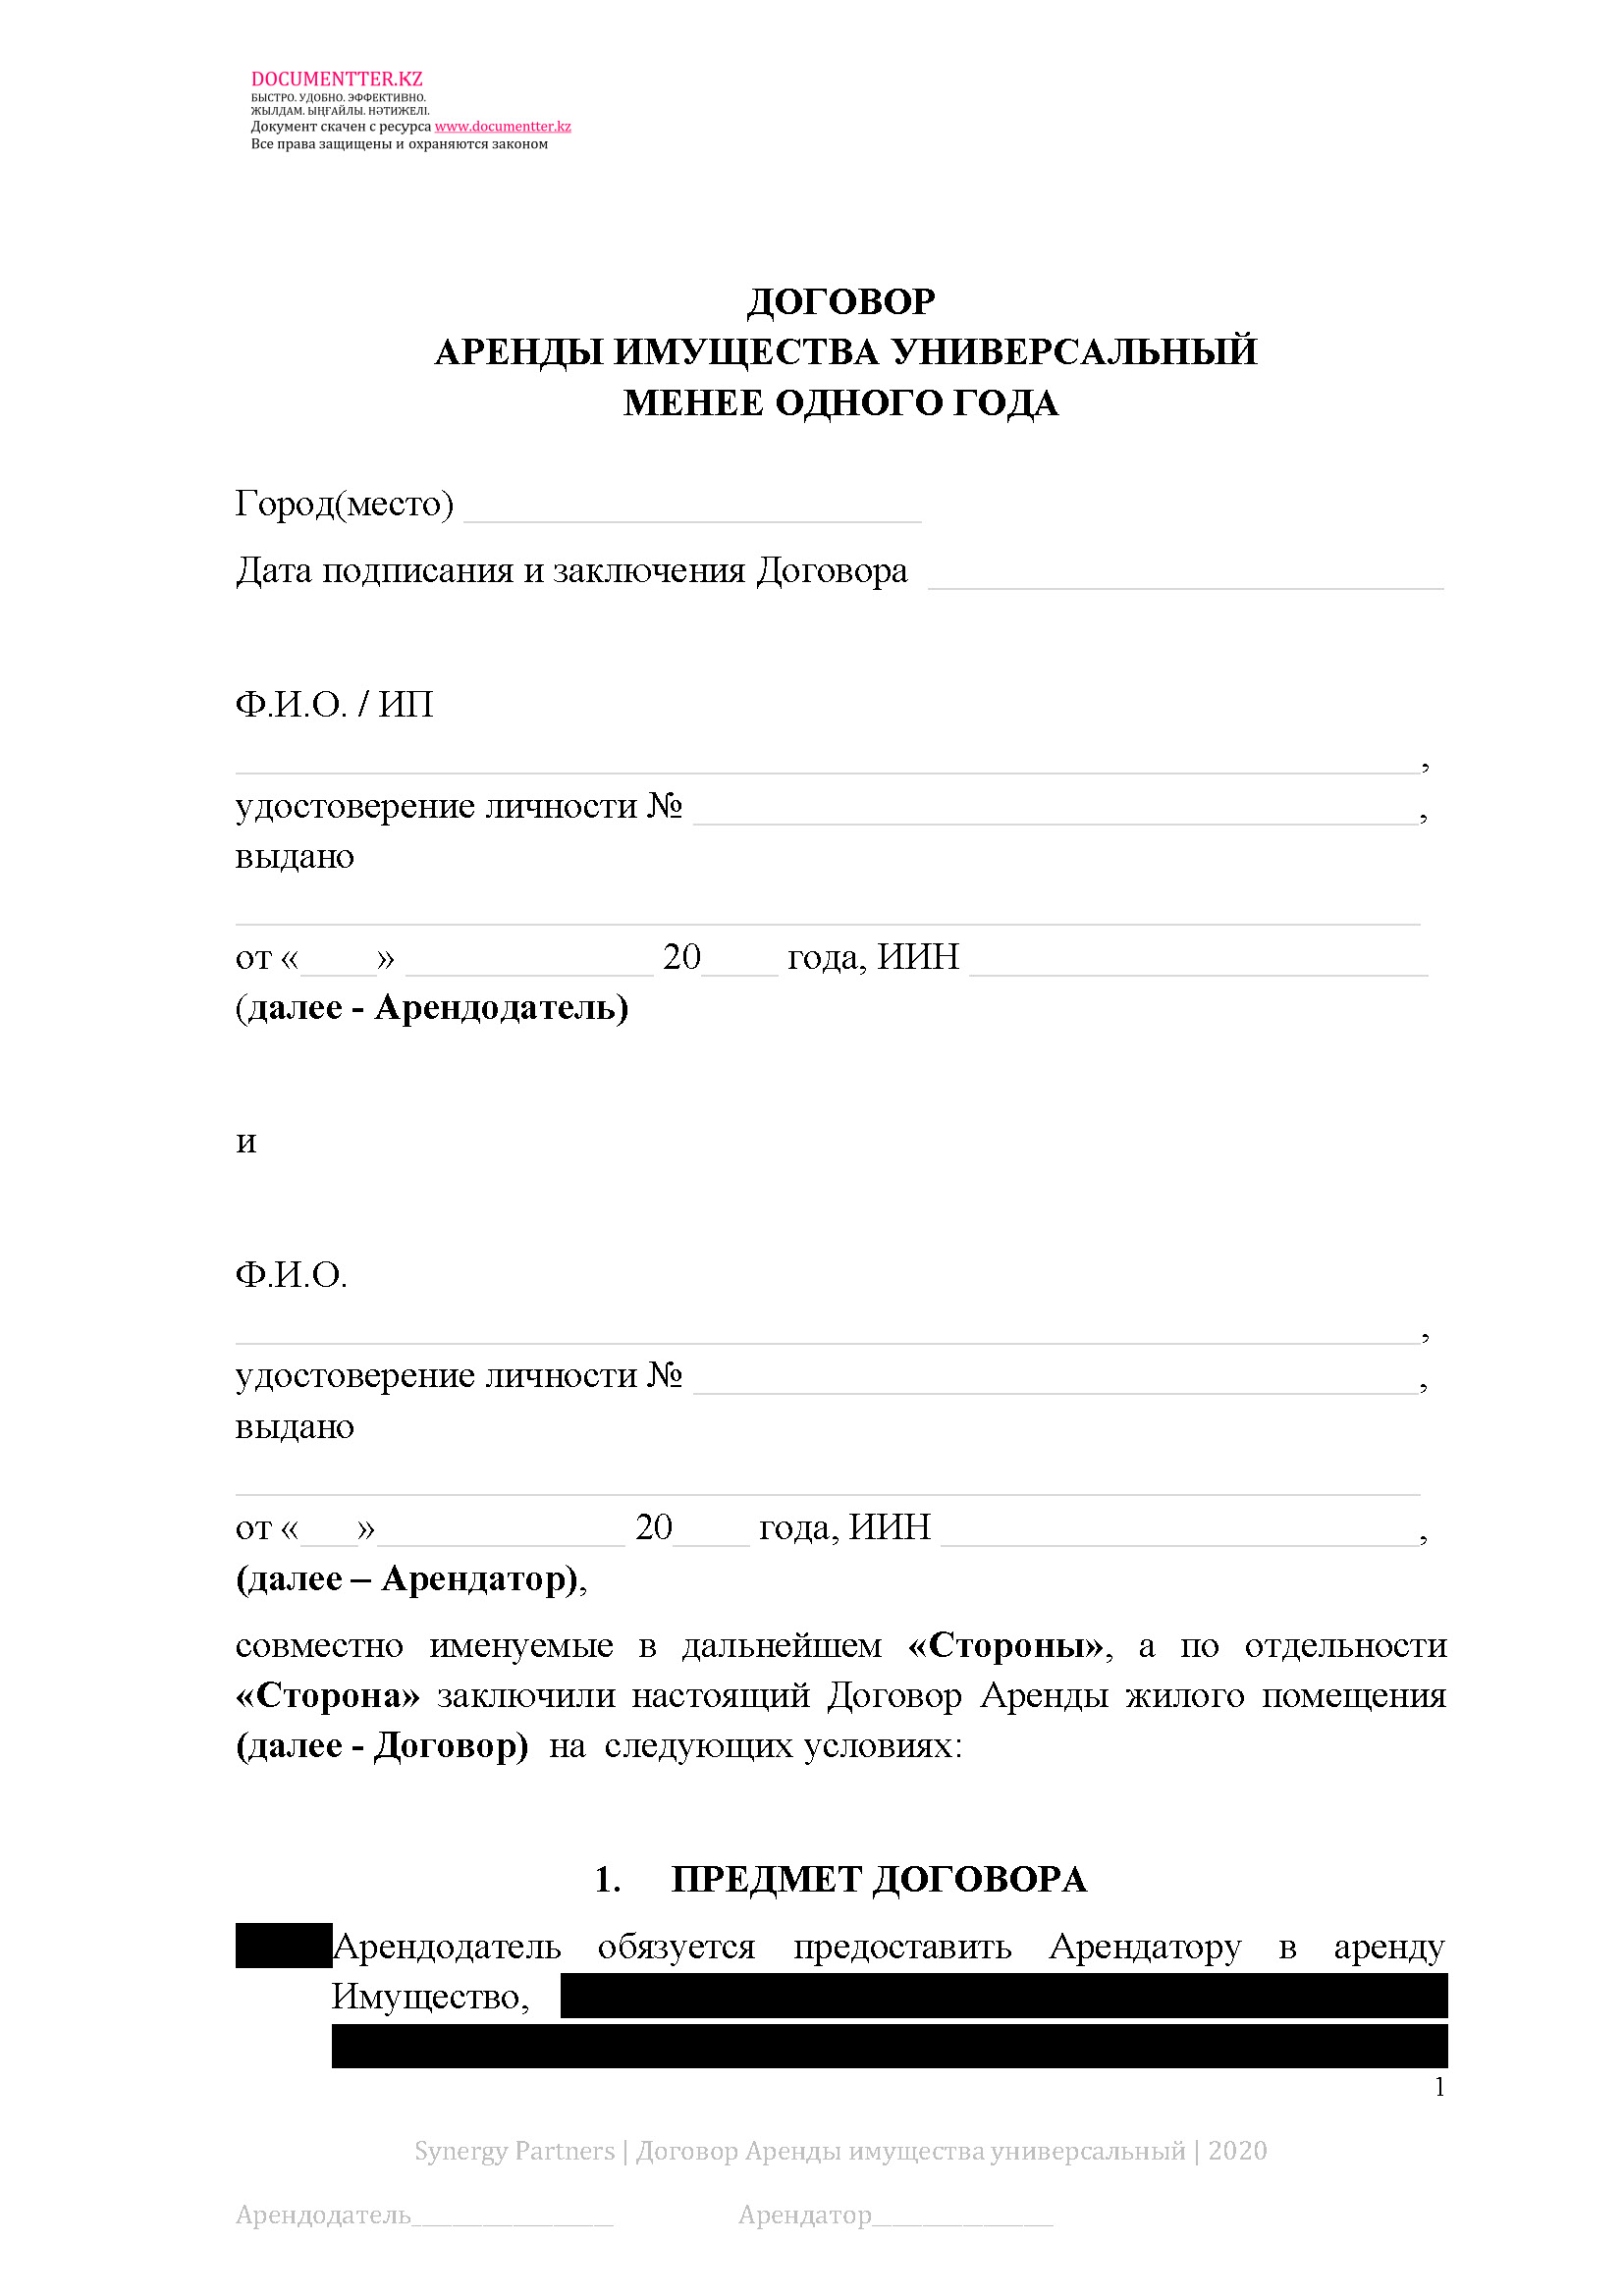 Договор аренды имущества (универсальный) 6 | documentter.kz в Казахстане 